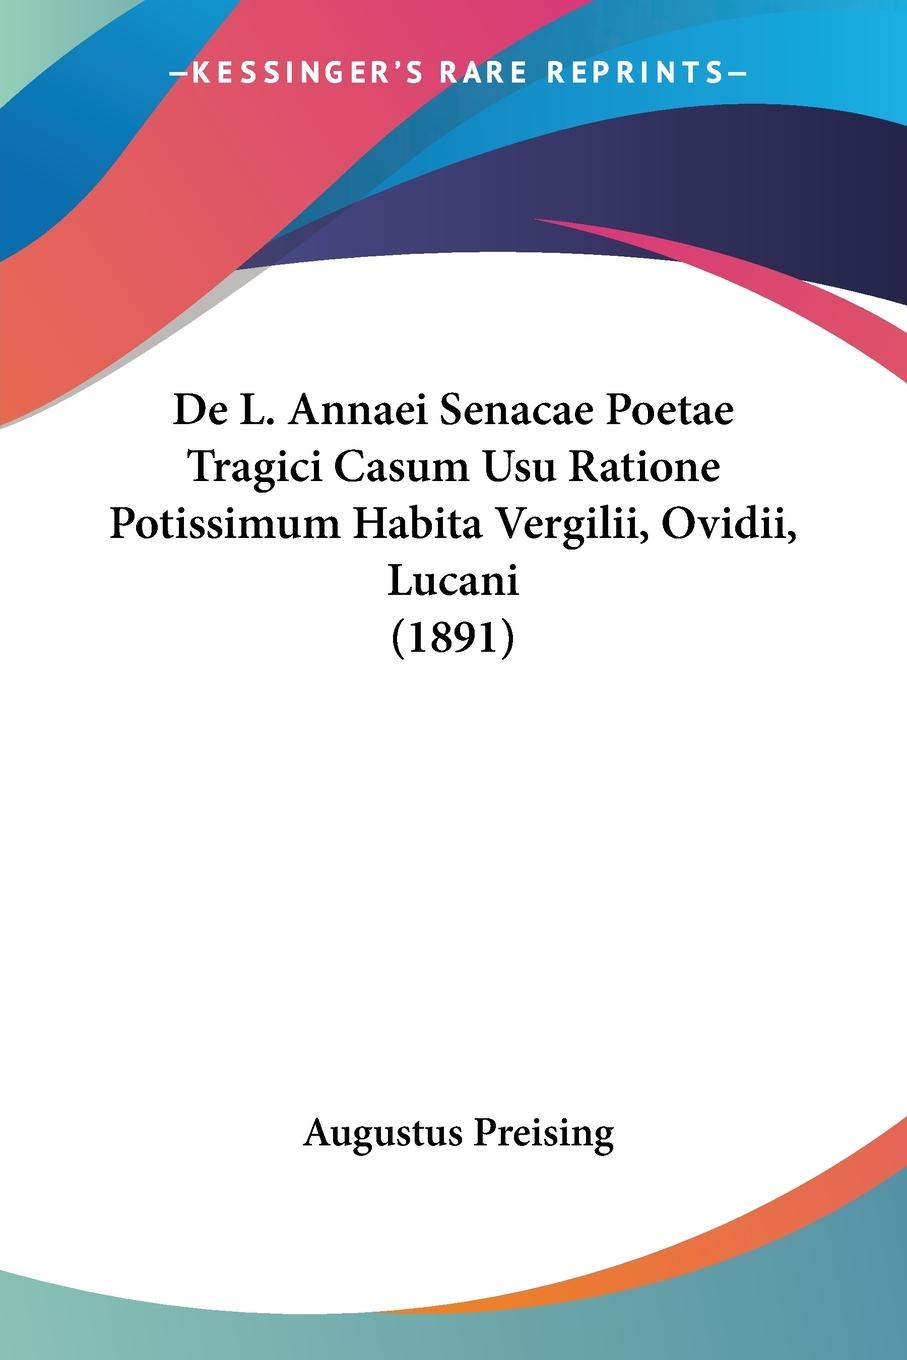 De L. Annaei Senacae Poetae Tragici Casum Usu Ratione Potissimum Habita Vergilii, Ovidii, Lucani (1891) - Preising, Augustus